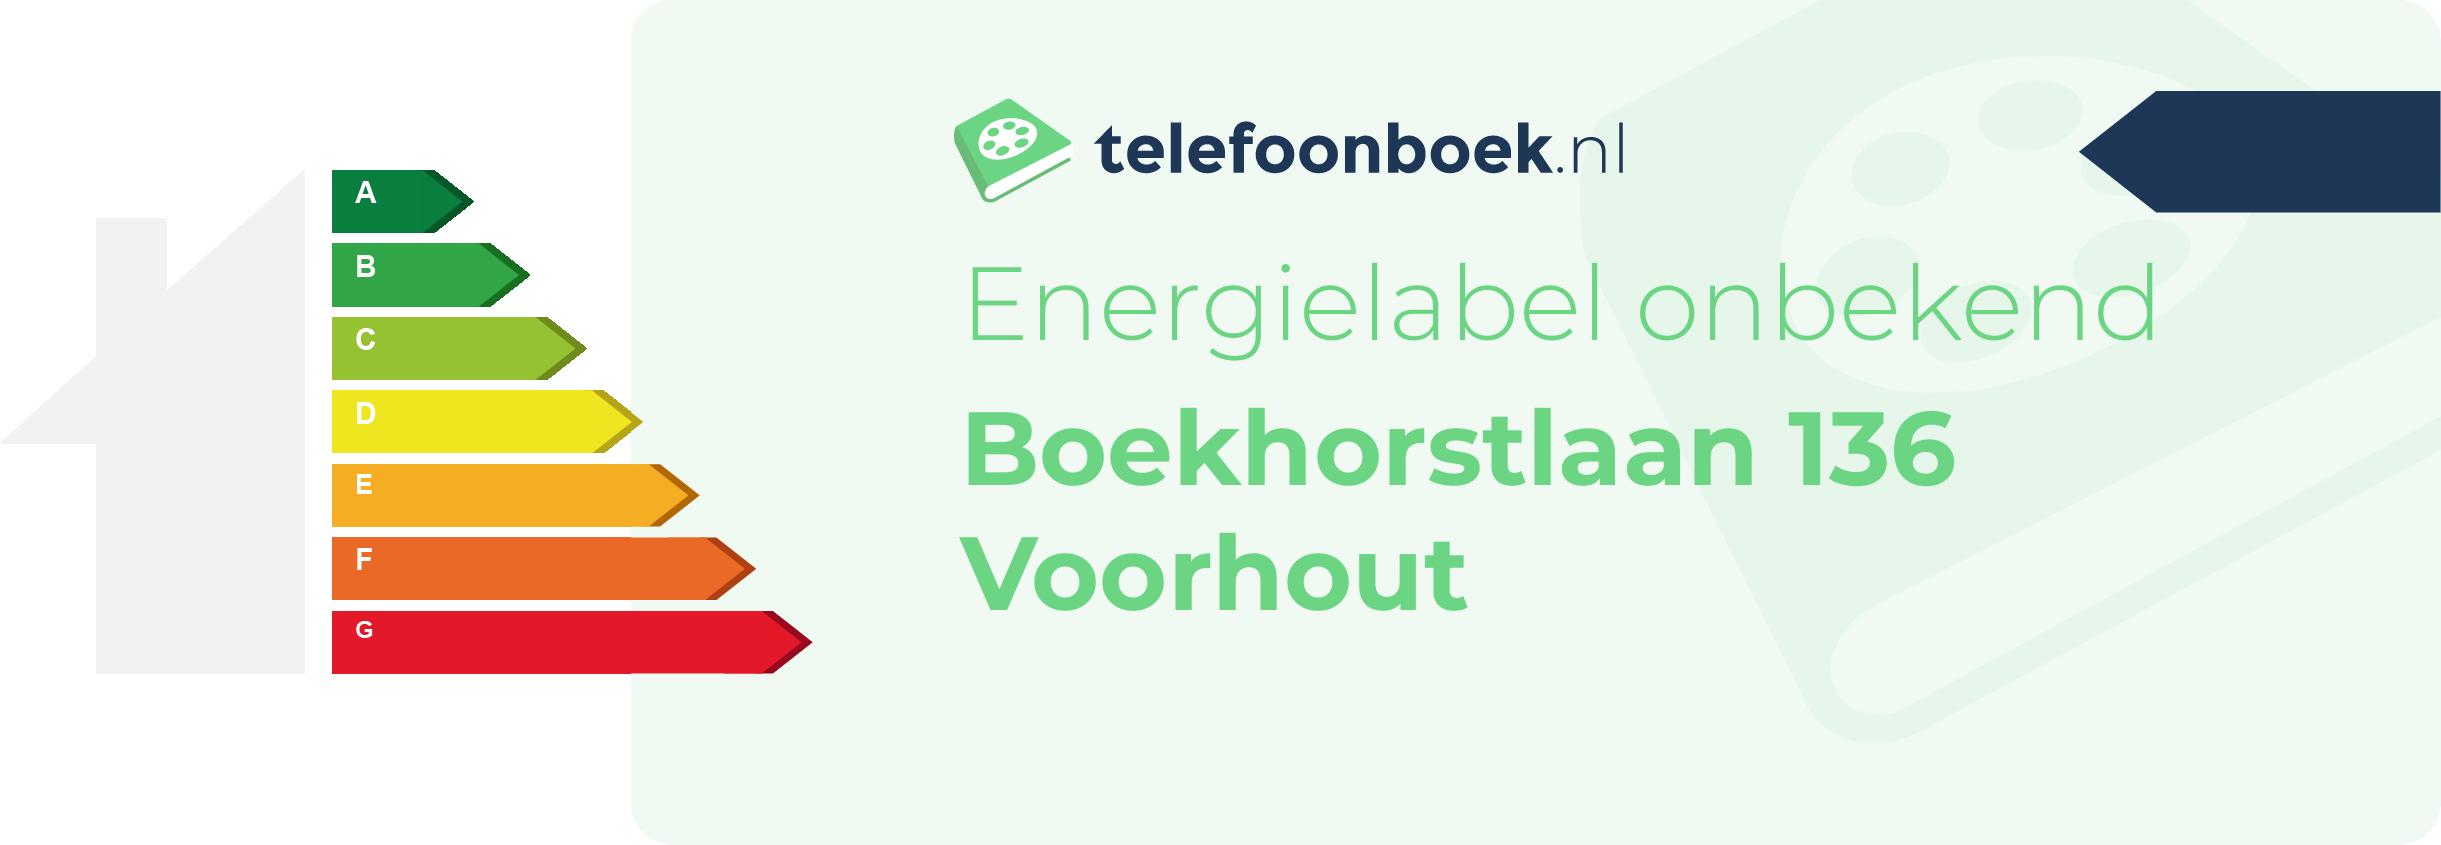 Energielabel Boekhorstlaan 136 Voorhout